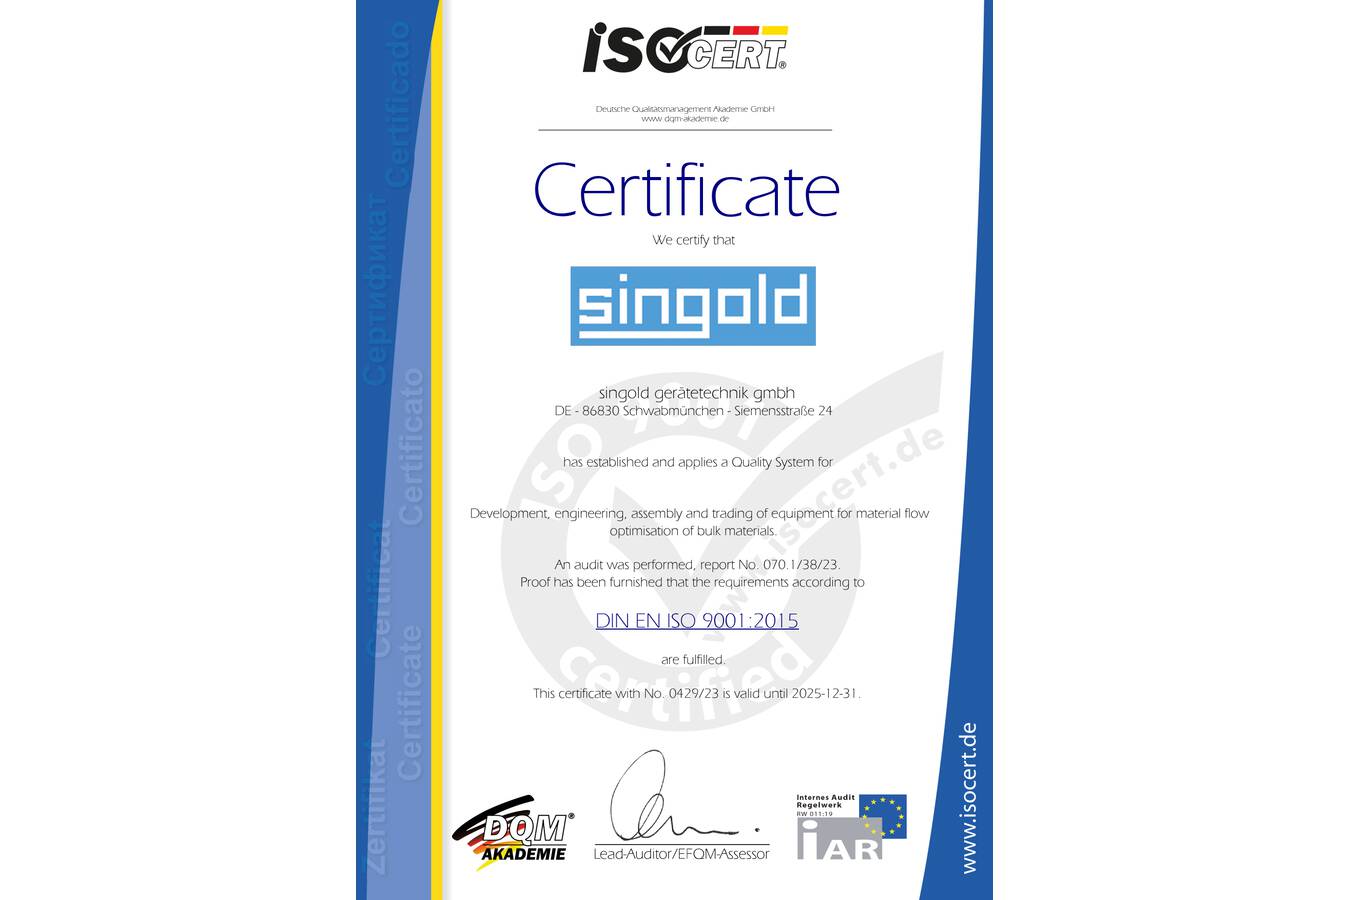 ISO 9001:2015 Zertifikat